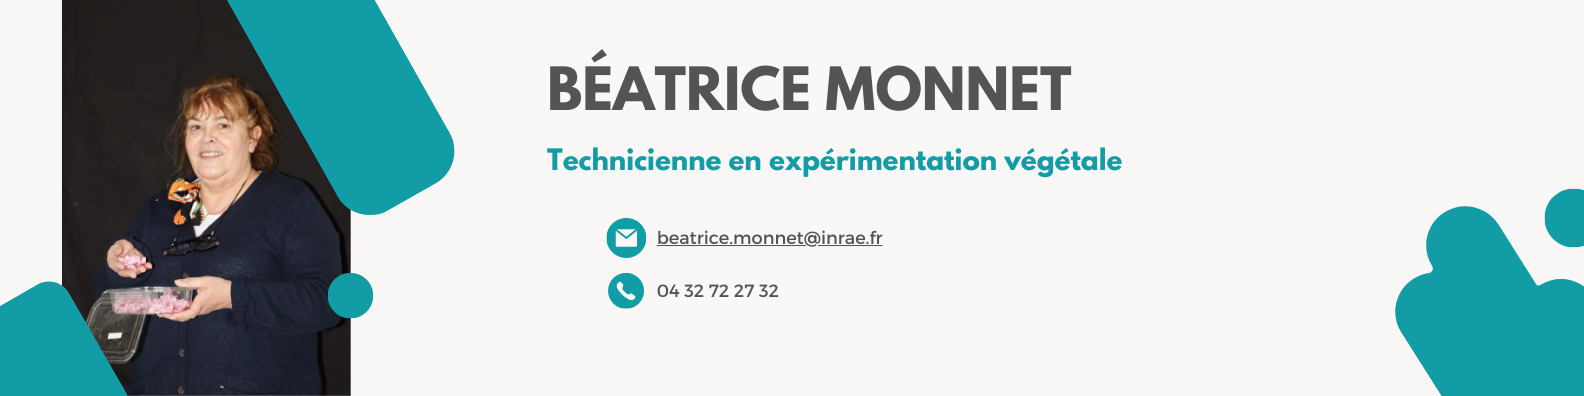 Béatrice Monnet.png